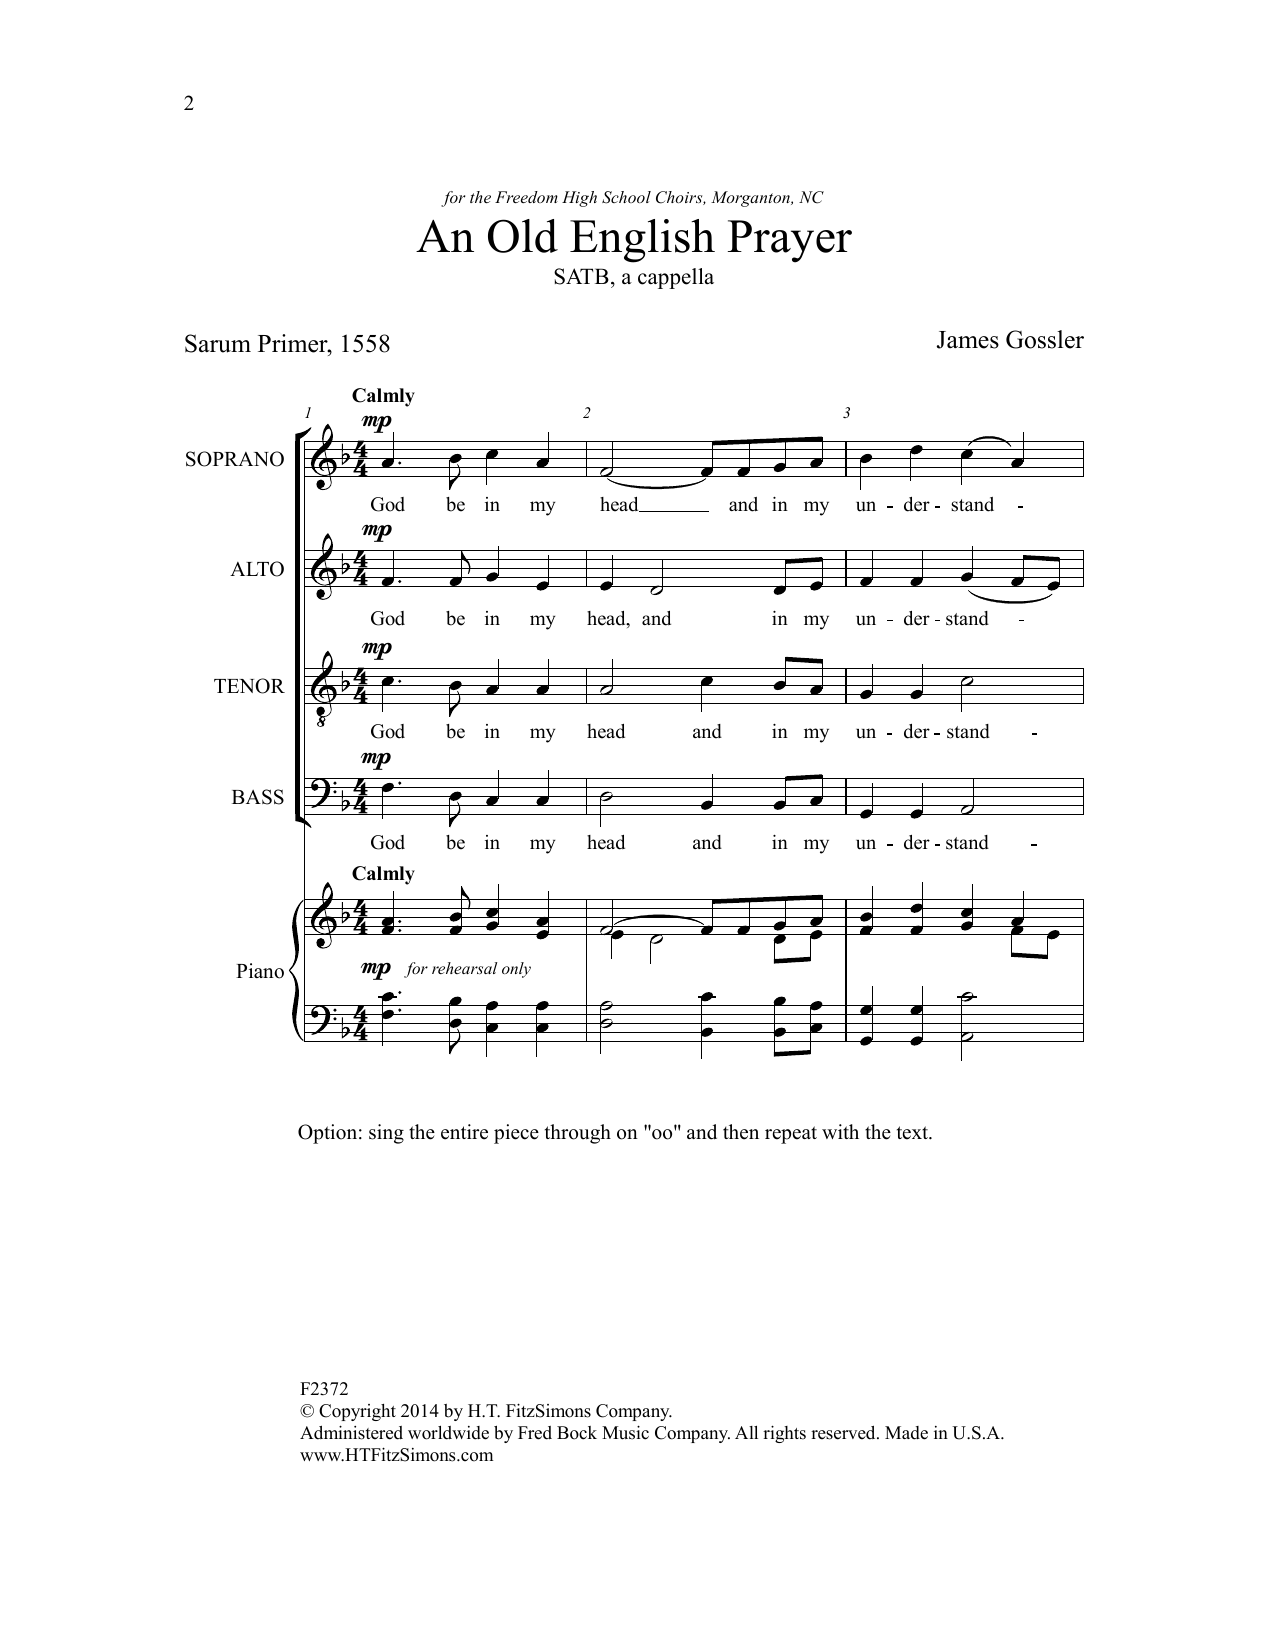 Download James Gossler An Old English Prayer Sheet Music